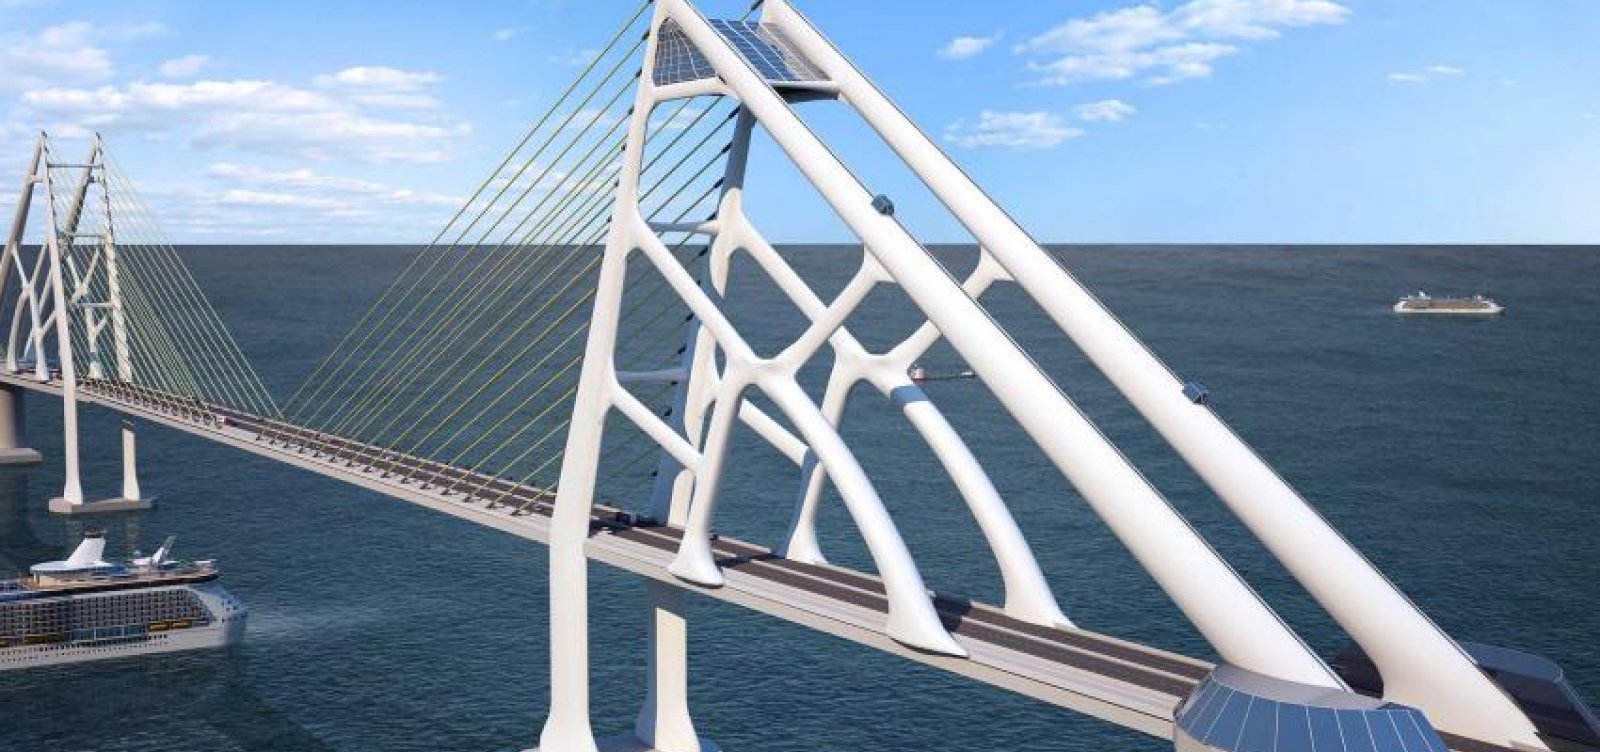 Rui autoriza concessionária a fazer desapropriações para construção de ponte